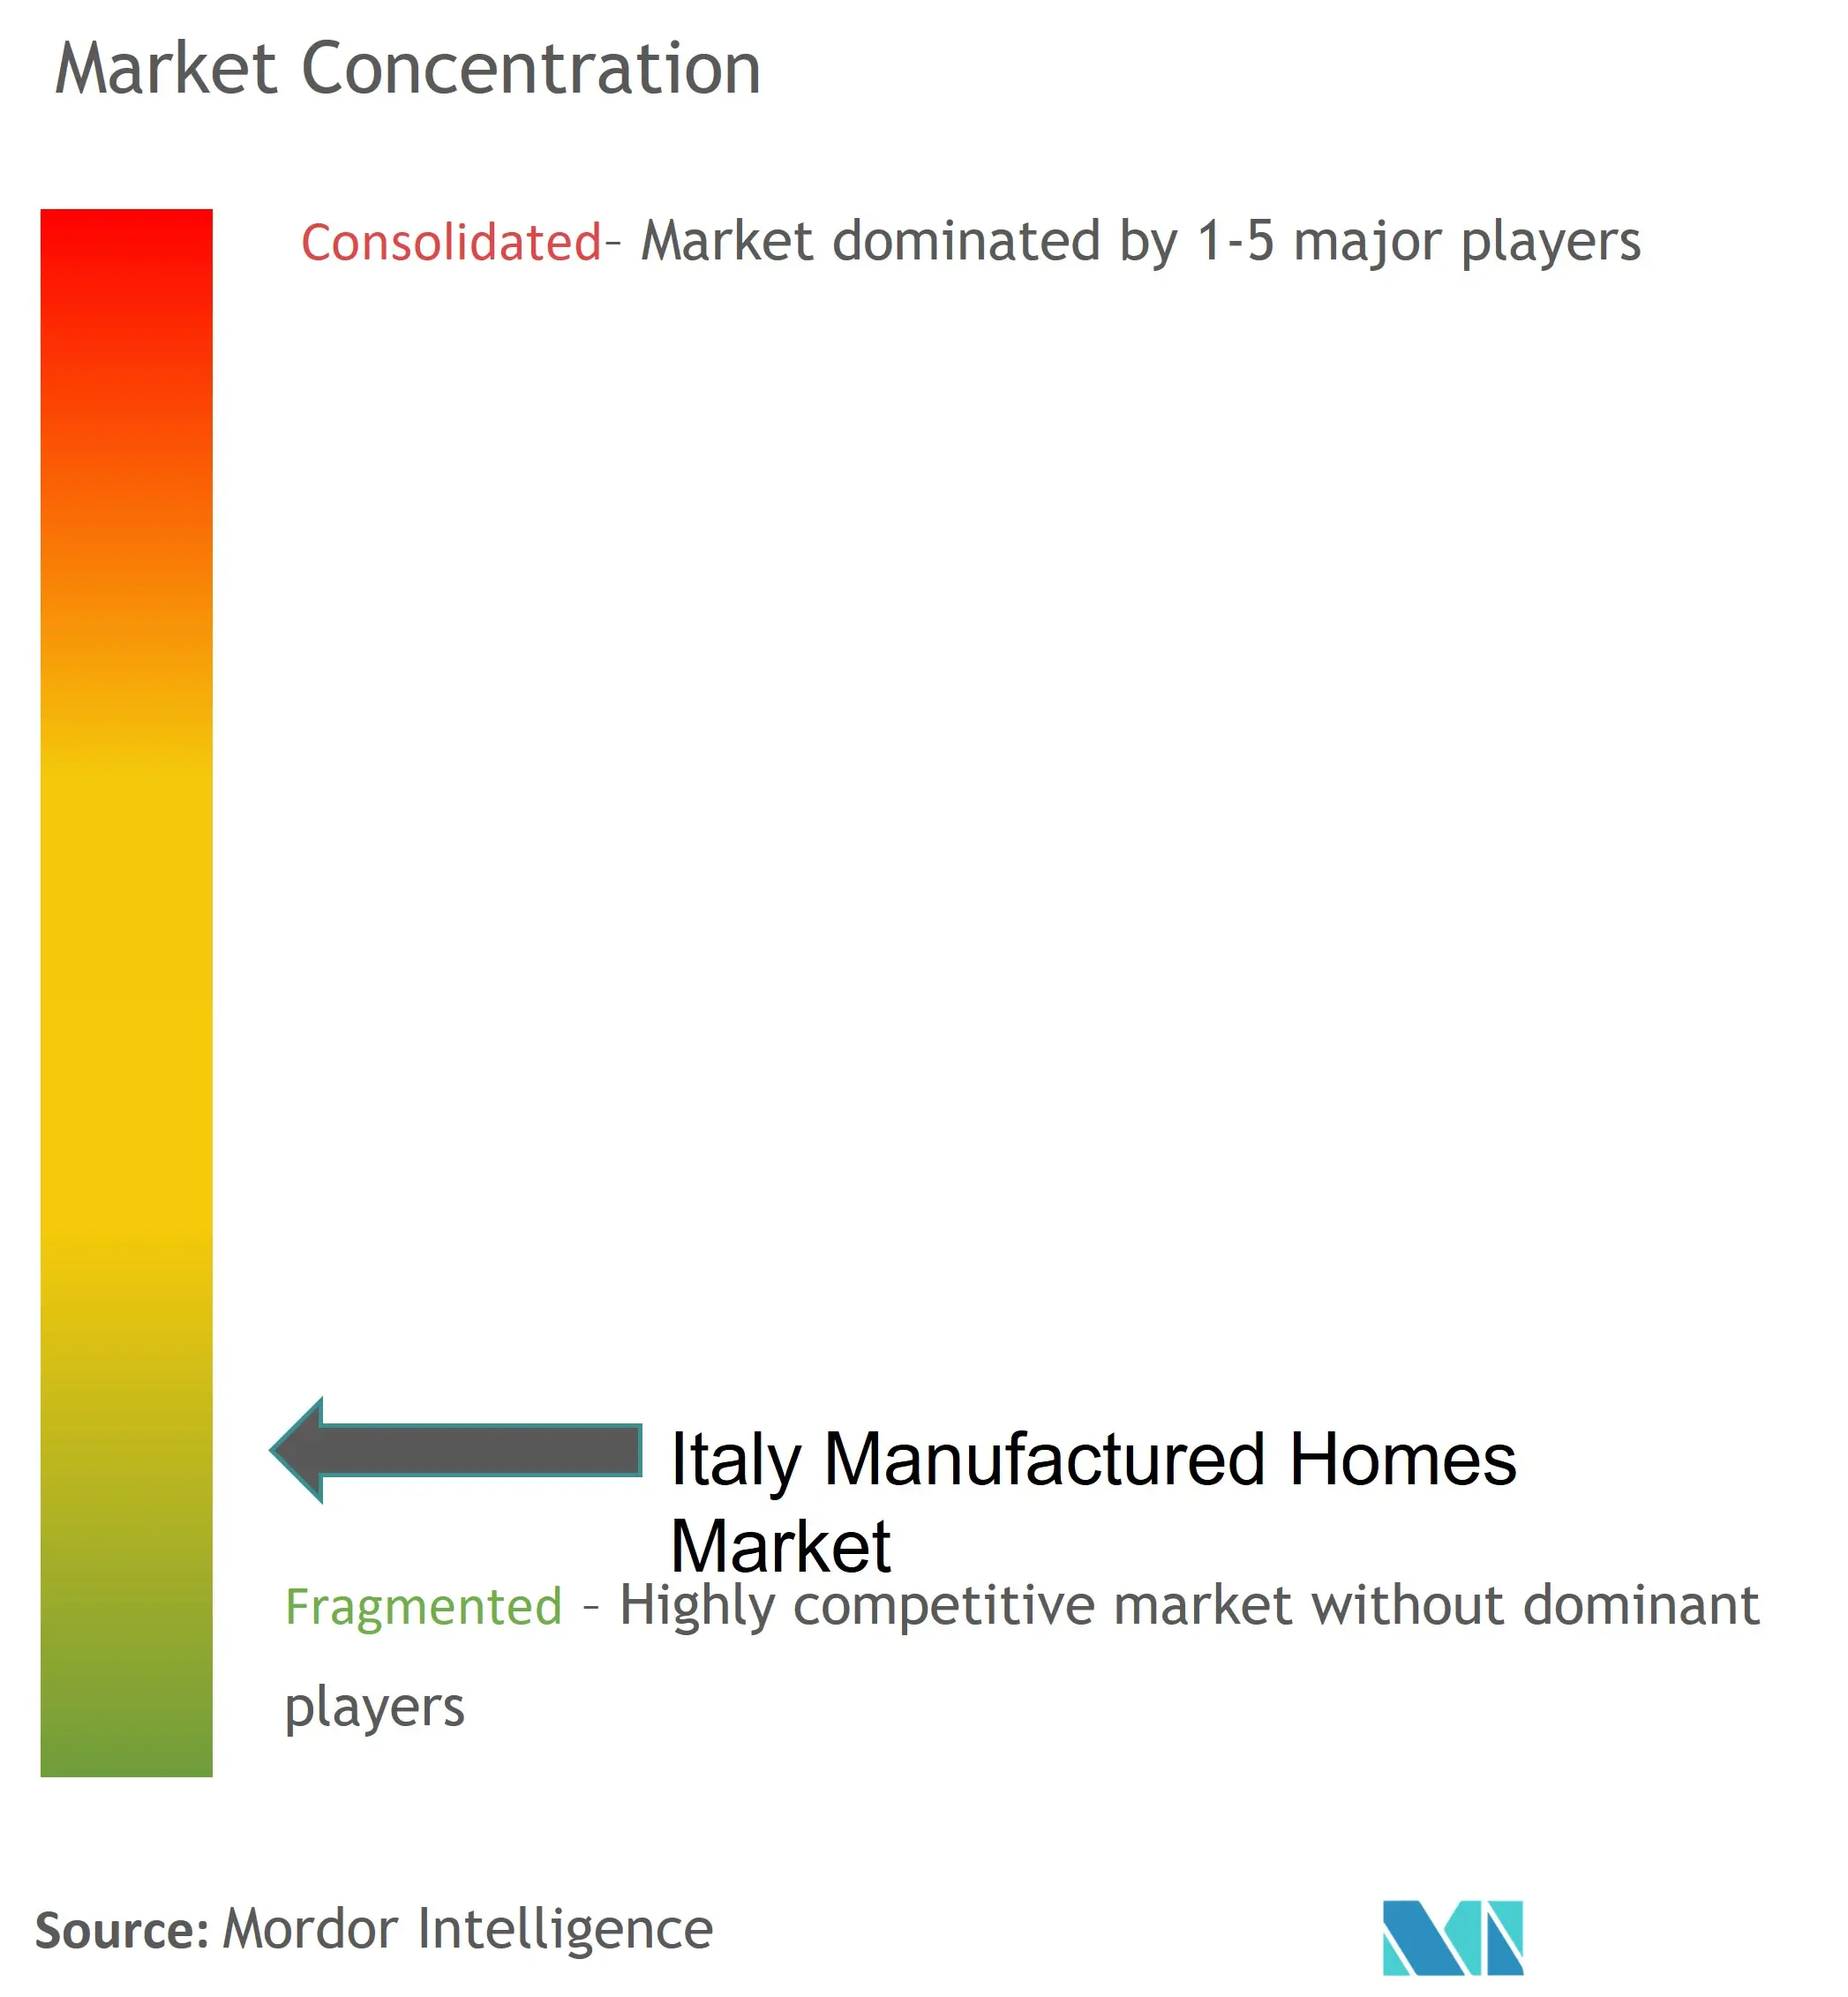 イタリア製造住宅市場の集中度